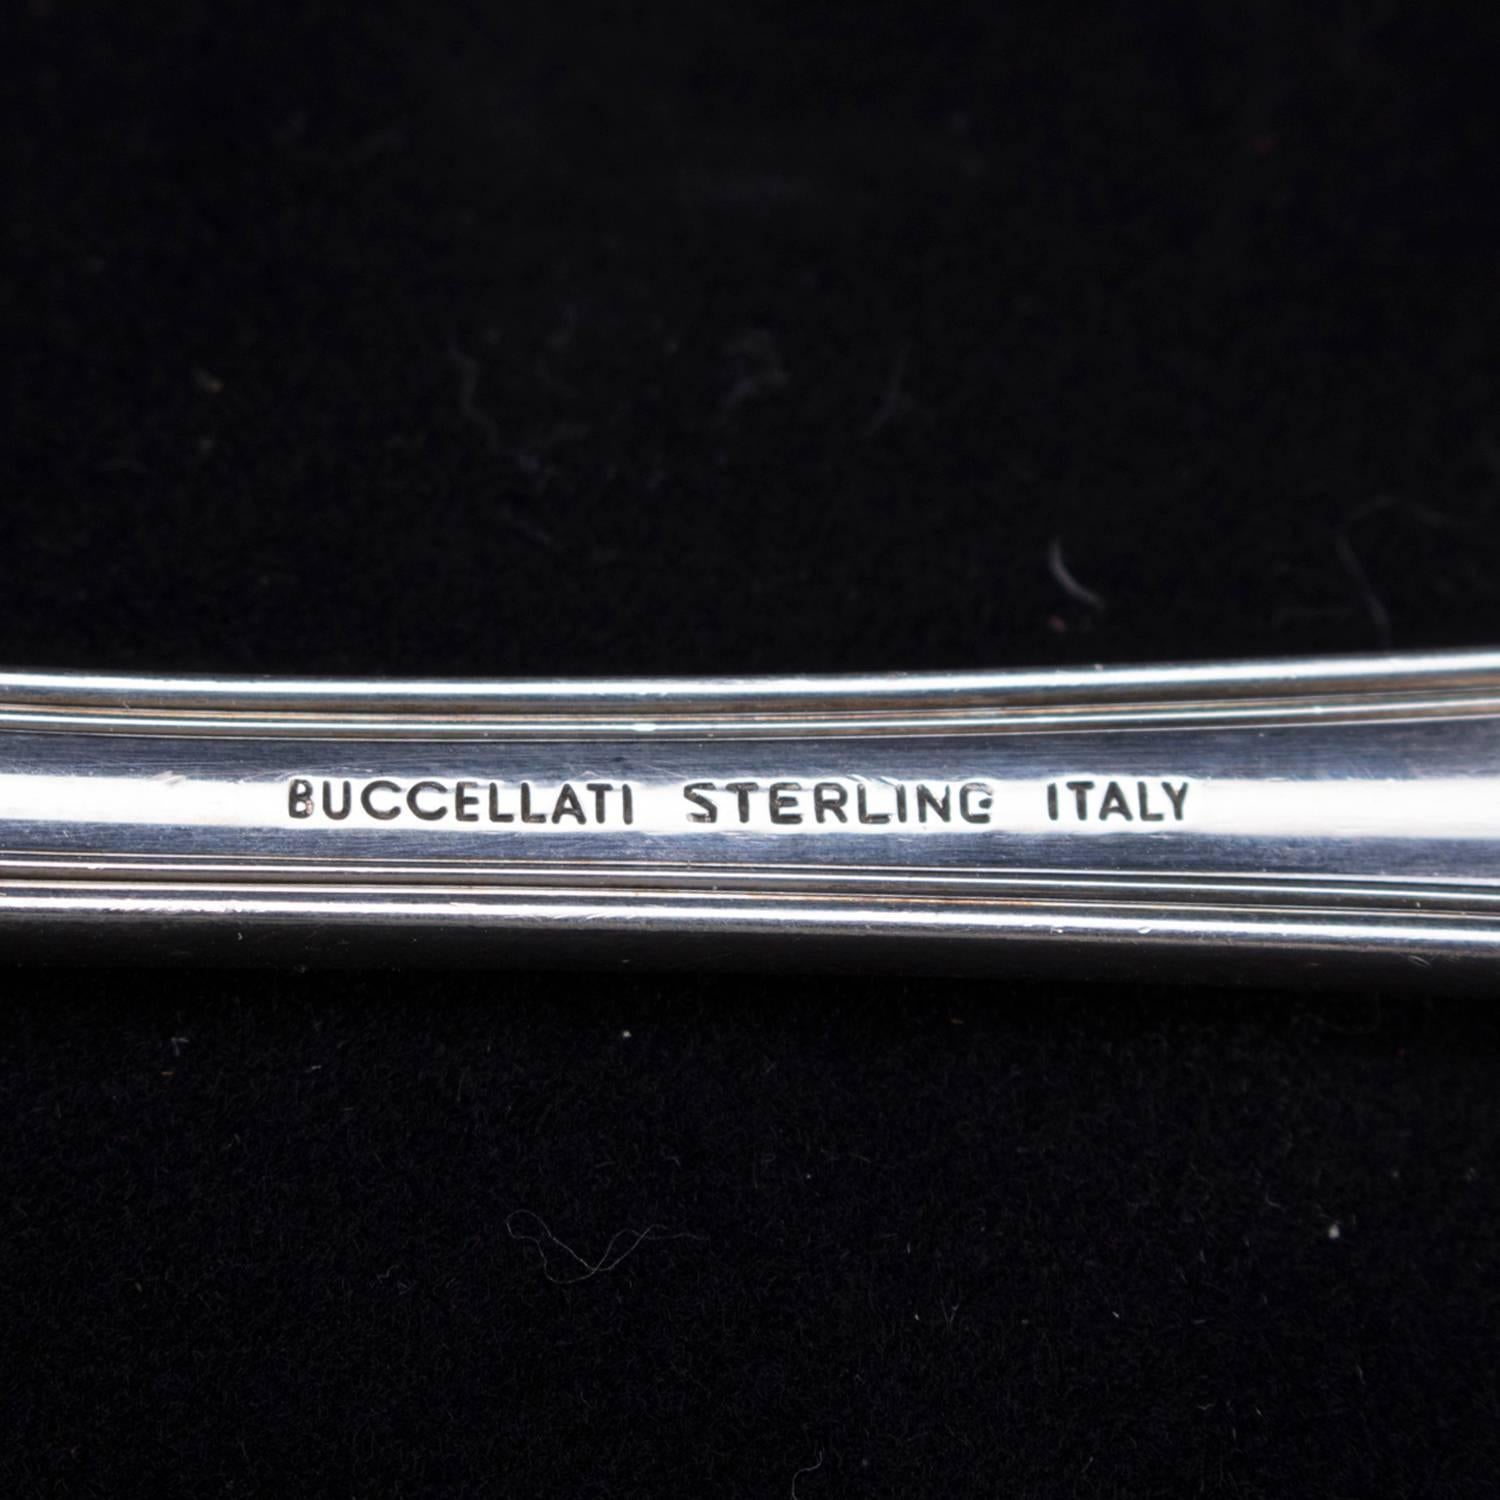 Italian Buccellati Milano Sterling Silver Serving Spoon, 4.18 toz, circa 1930 1